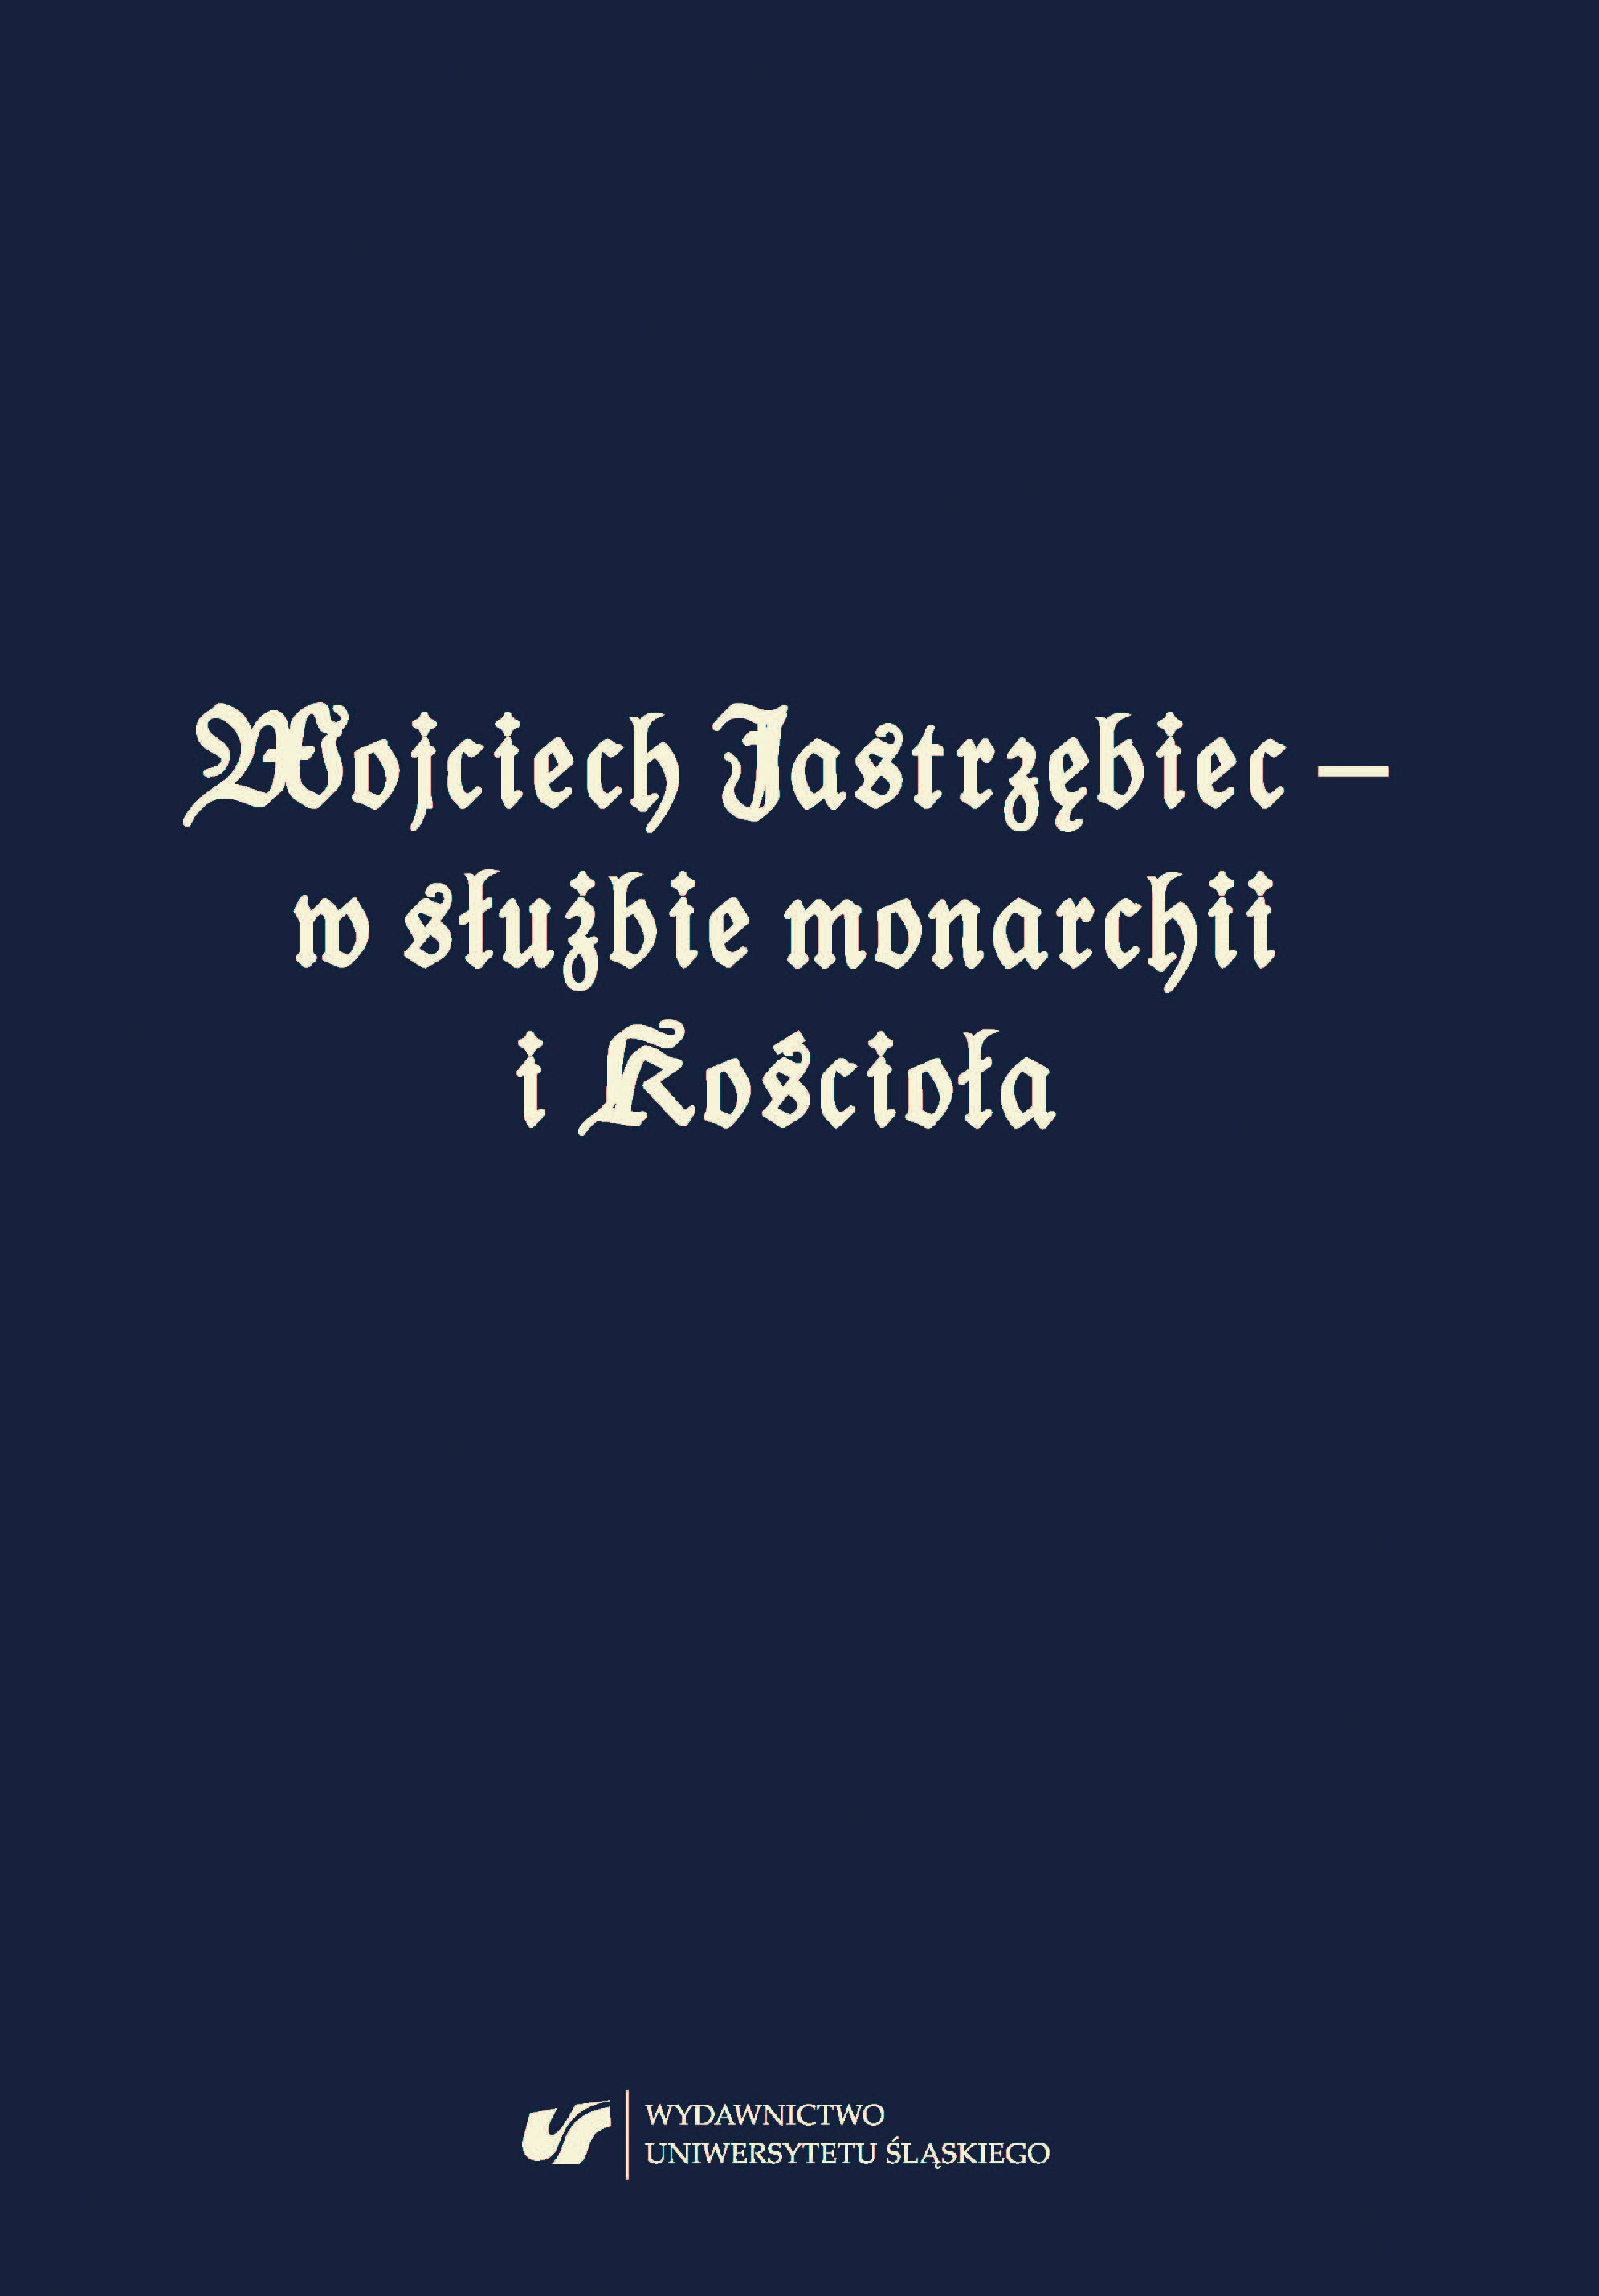 Wojciech Jastrzębiec – in the service of the monarchy and Church